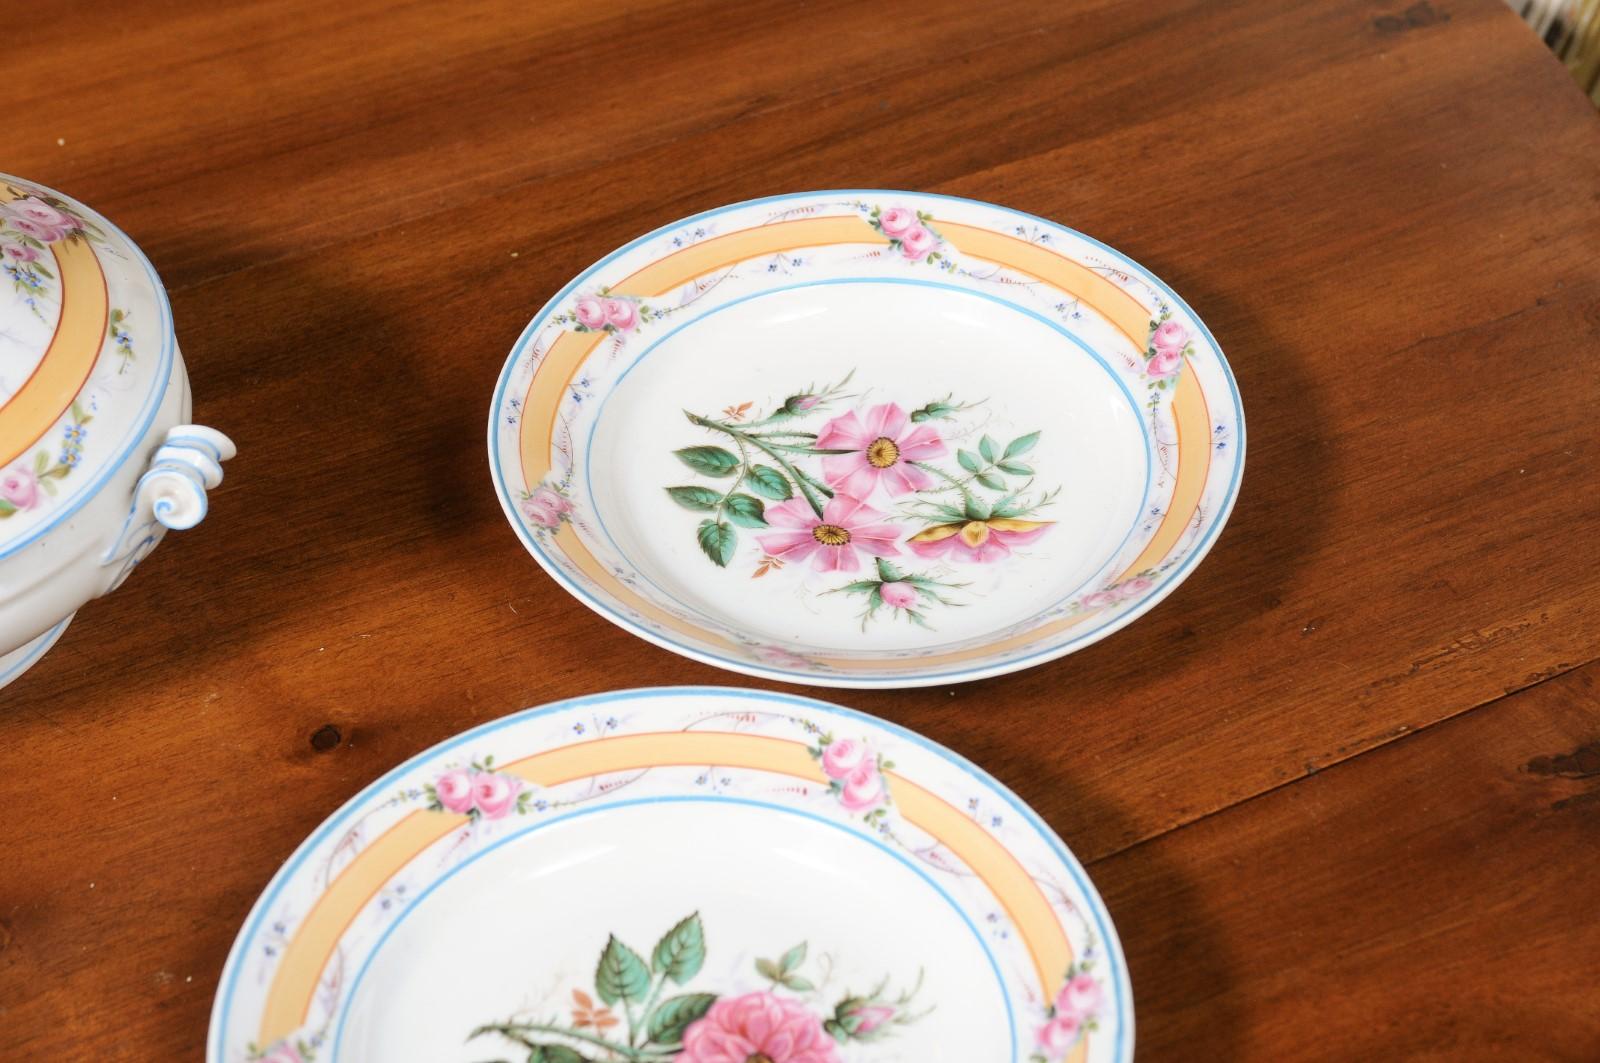 Porcelaine de Paris 19th Century Floral Dish Set with Casserole and Plates For Sale 7